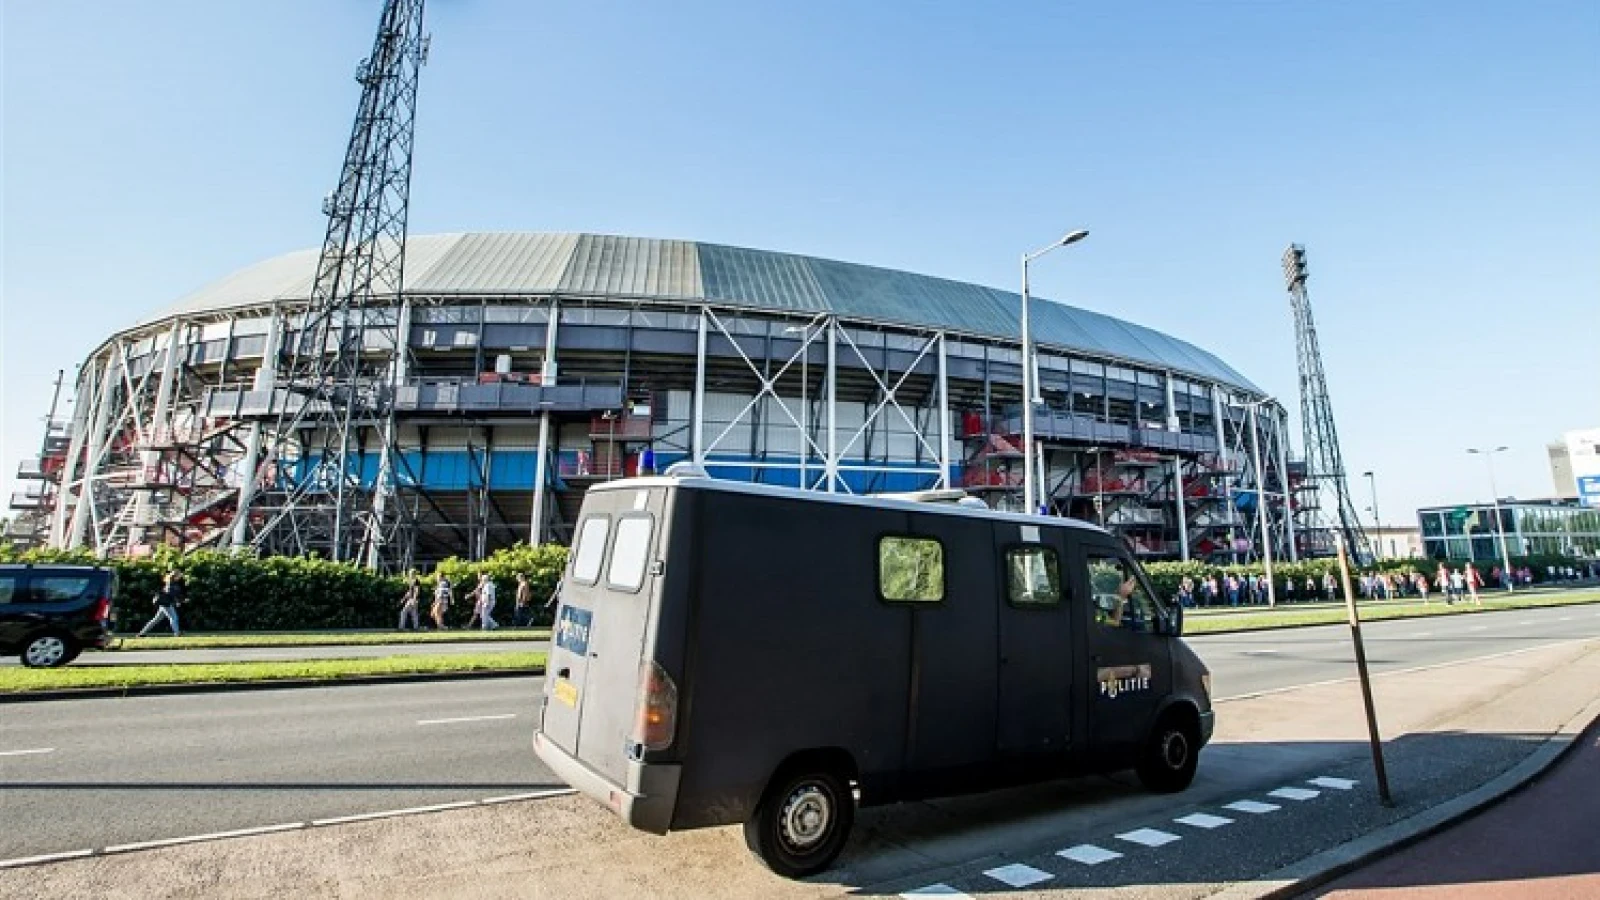 'Politie voorkomt confrontatie tussen Feyenoord en FC Porto supporters'